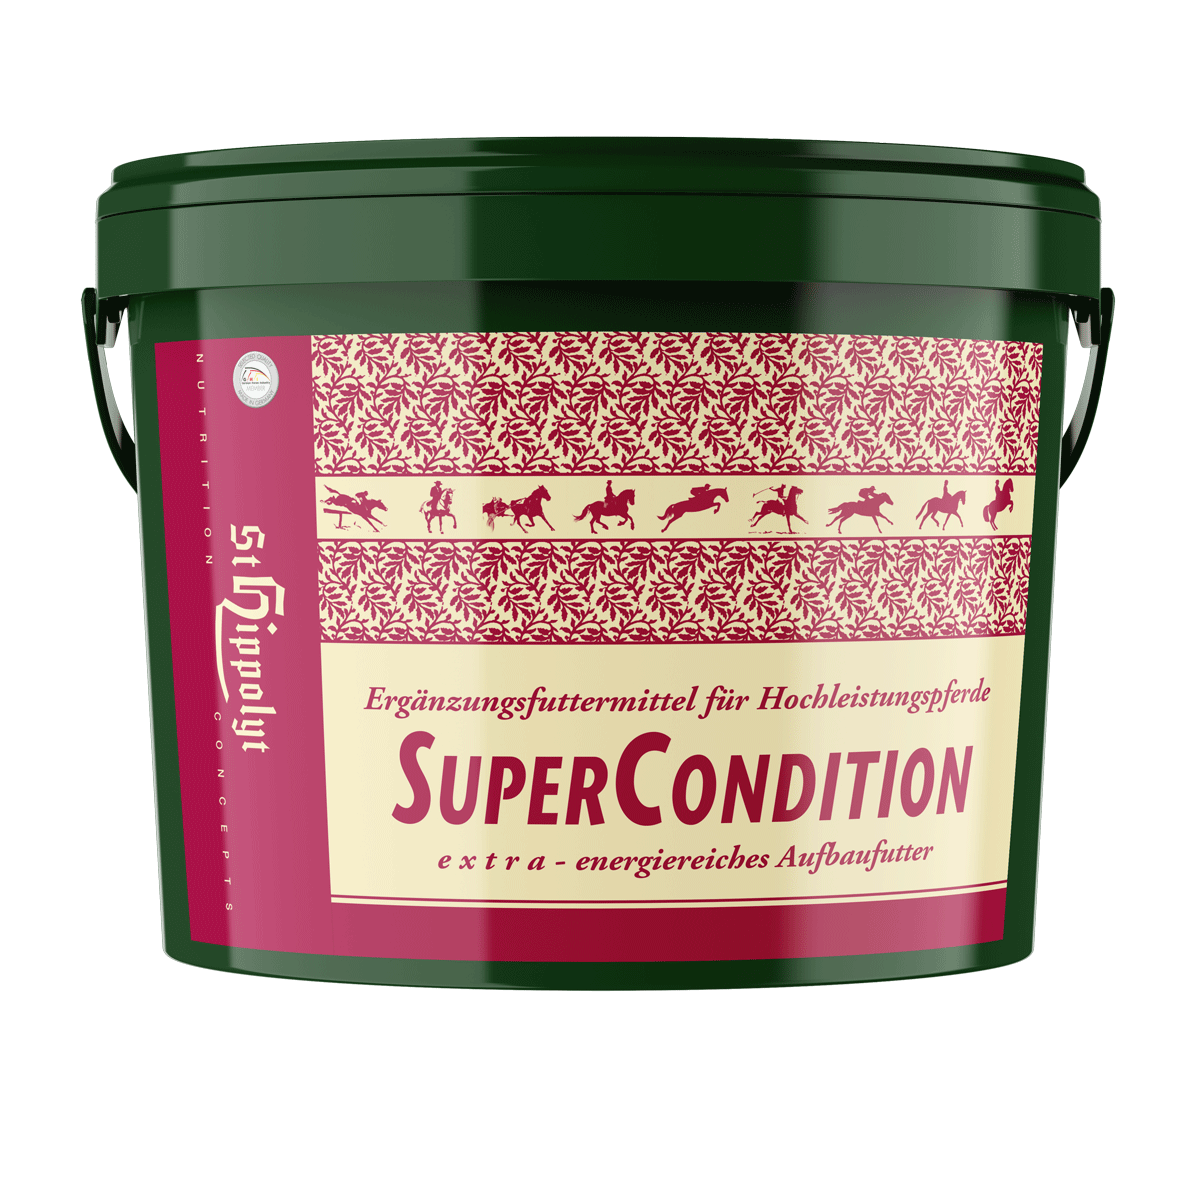 Super Condition